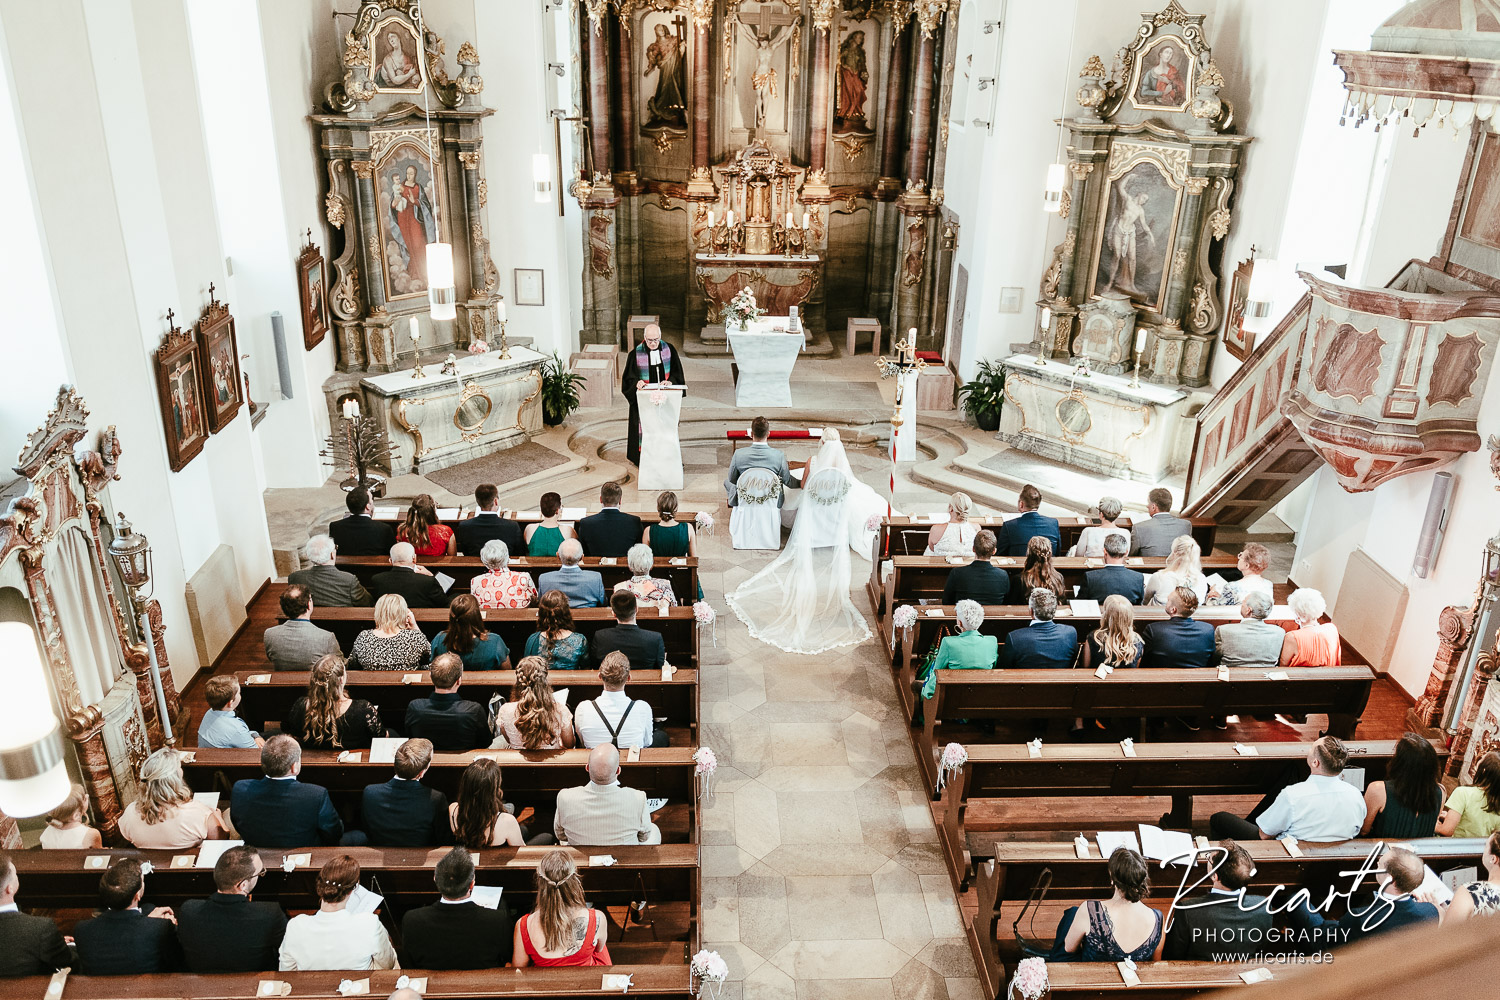 Hochzeitsgesellschaft-in-Kirche-von-oben-aufgenommen